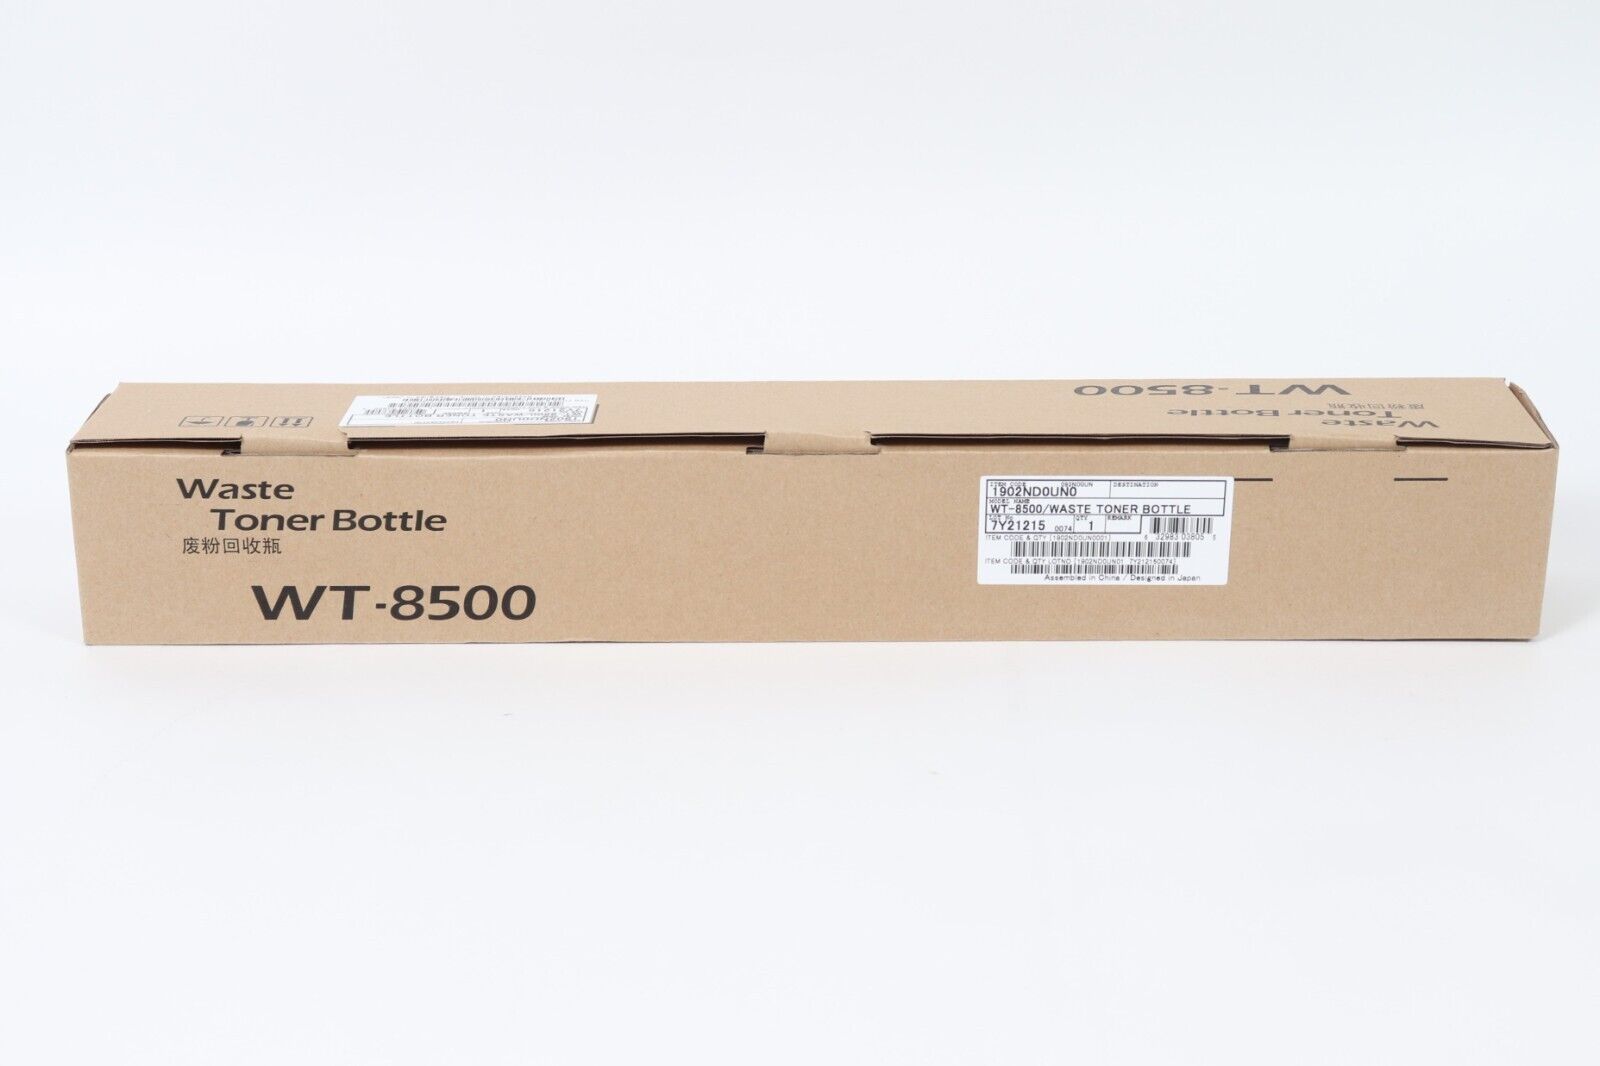 Kyocera WT-8500 Waste Toner Bottle Unit - Laser 1902nd0un0